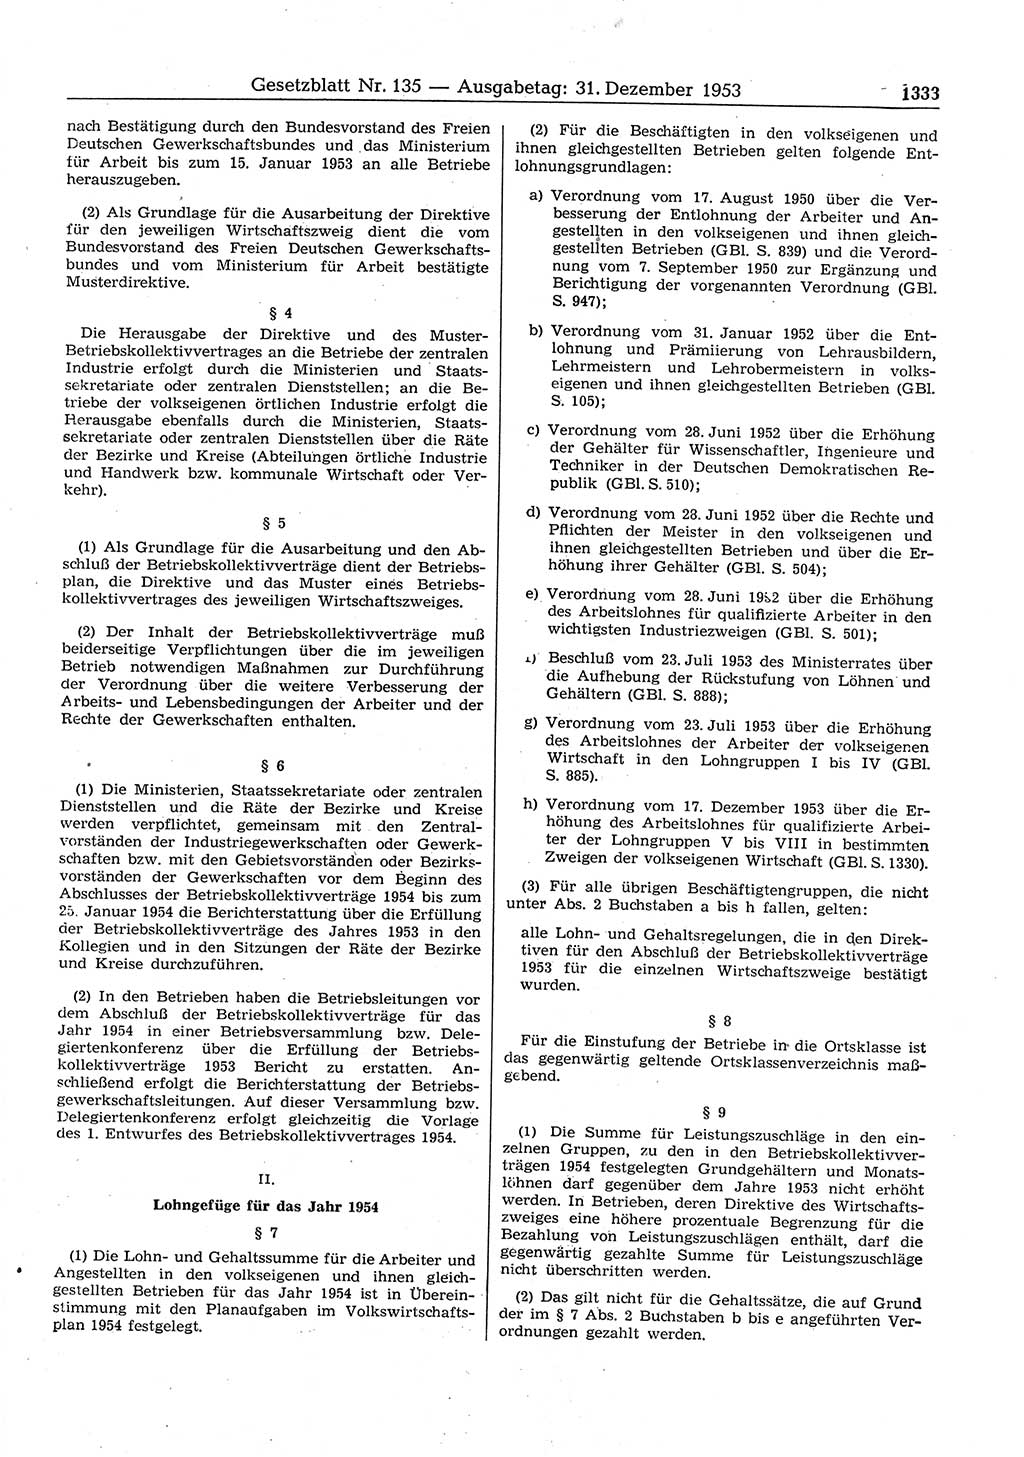 Gesetzblatt (GBl.) der Deutschen Demokratischen Republik (DDR) 1953, Seite 1333 (GBl. DDR 1953, S. 1333)